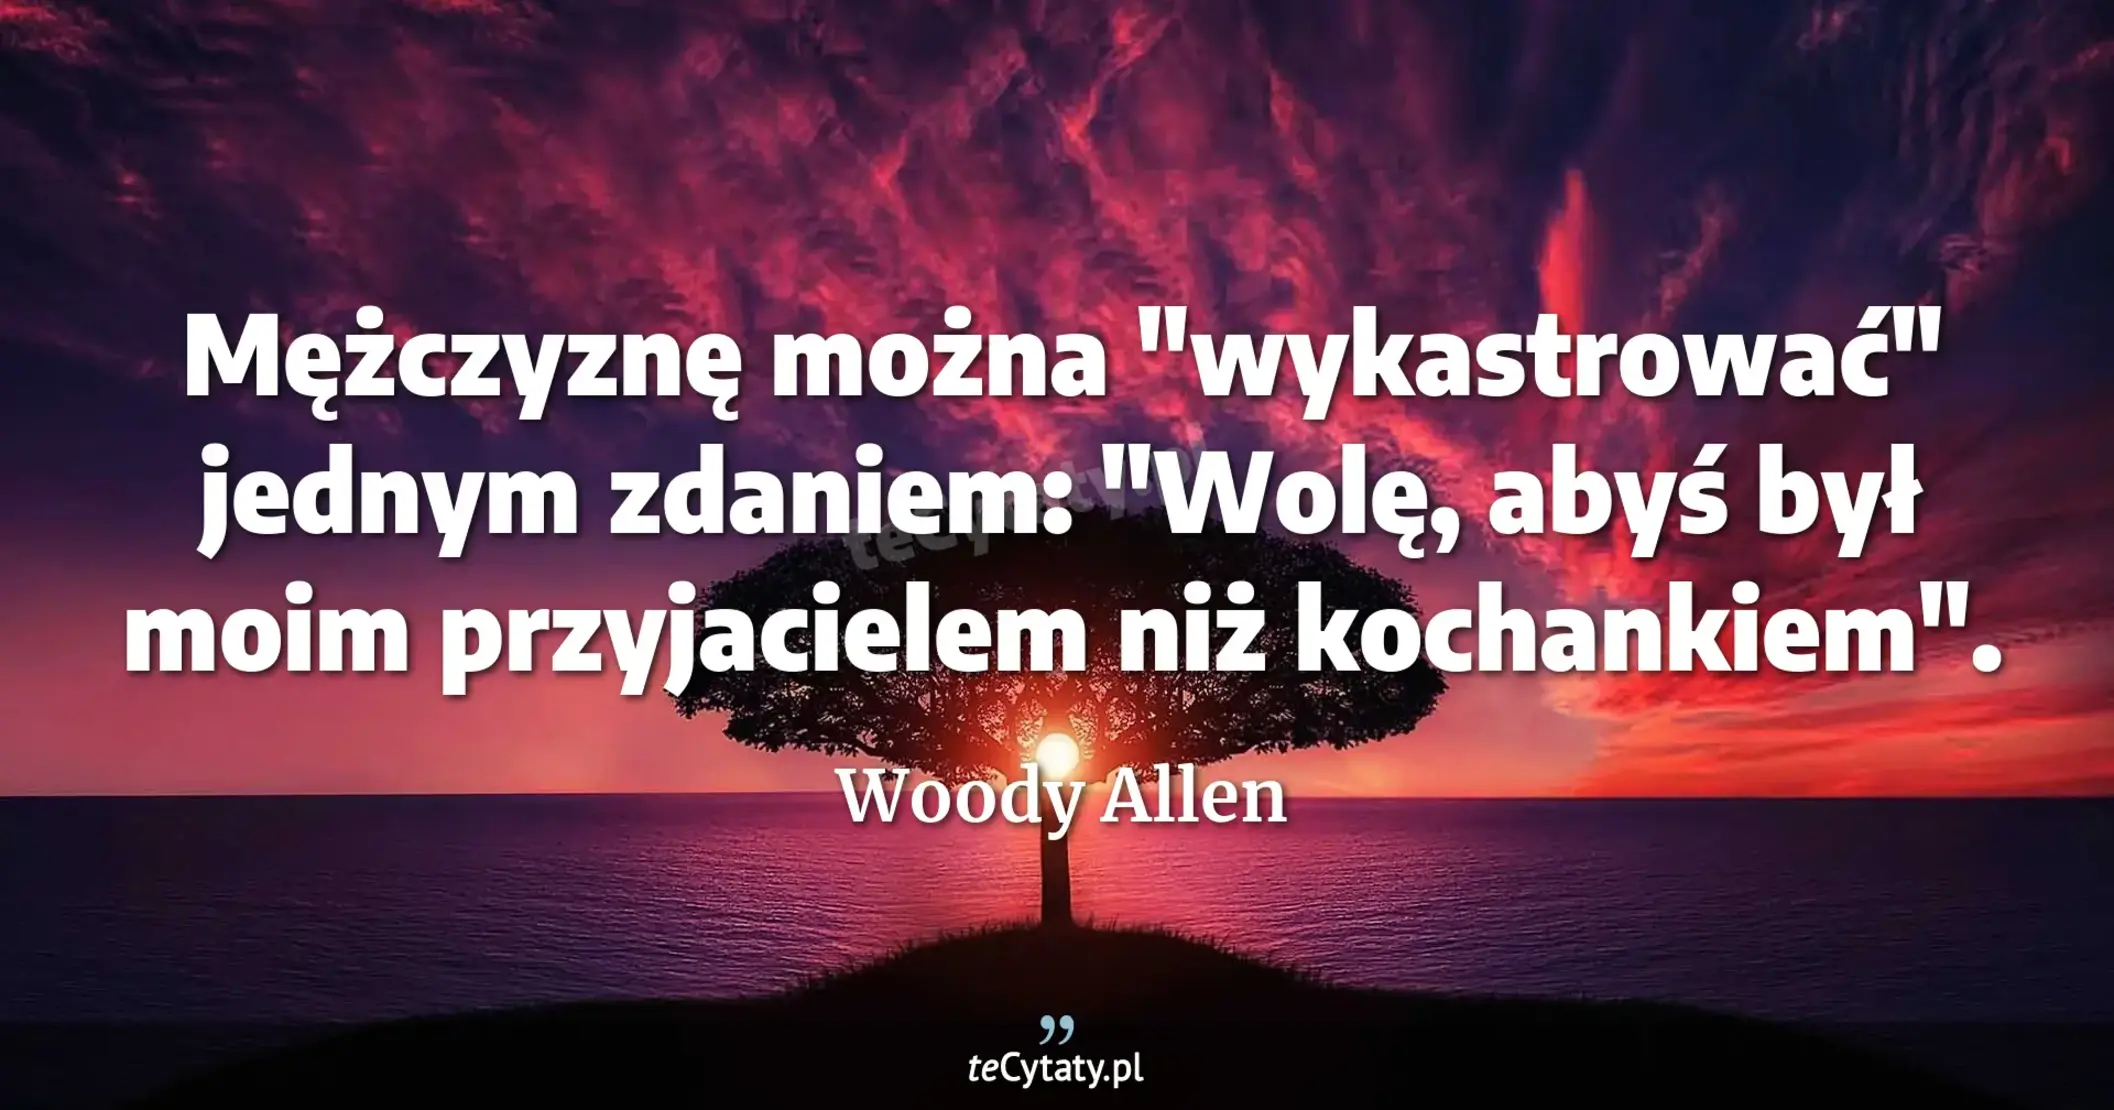 Mężczyznę można "wykastrować" jednym zdaniem: "Wolę, abyś był moim przyjacielem niż kochankiem". - Woody Allen